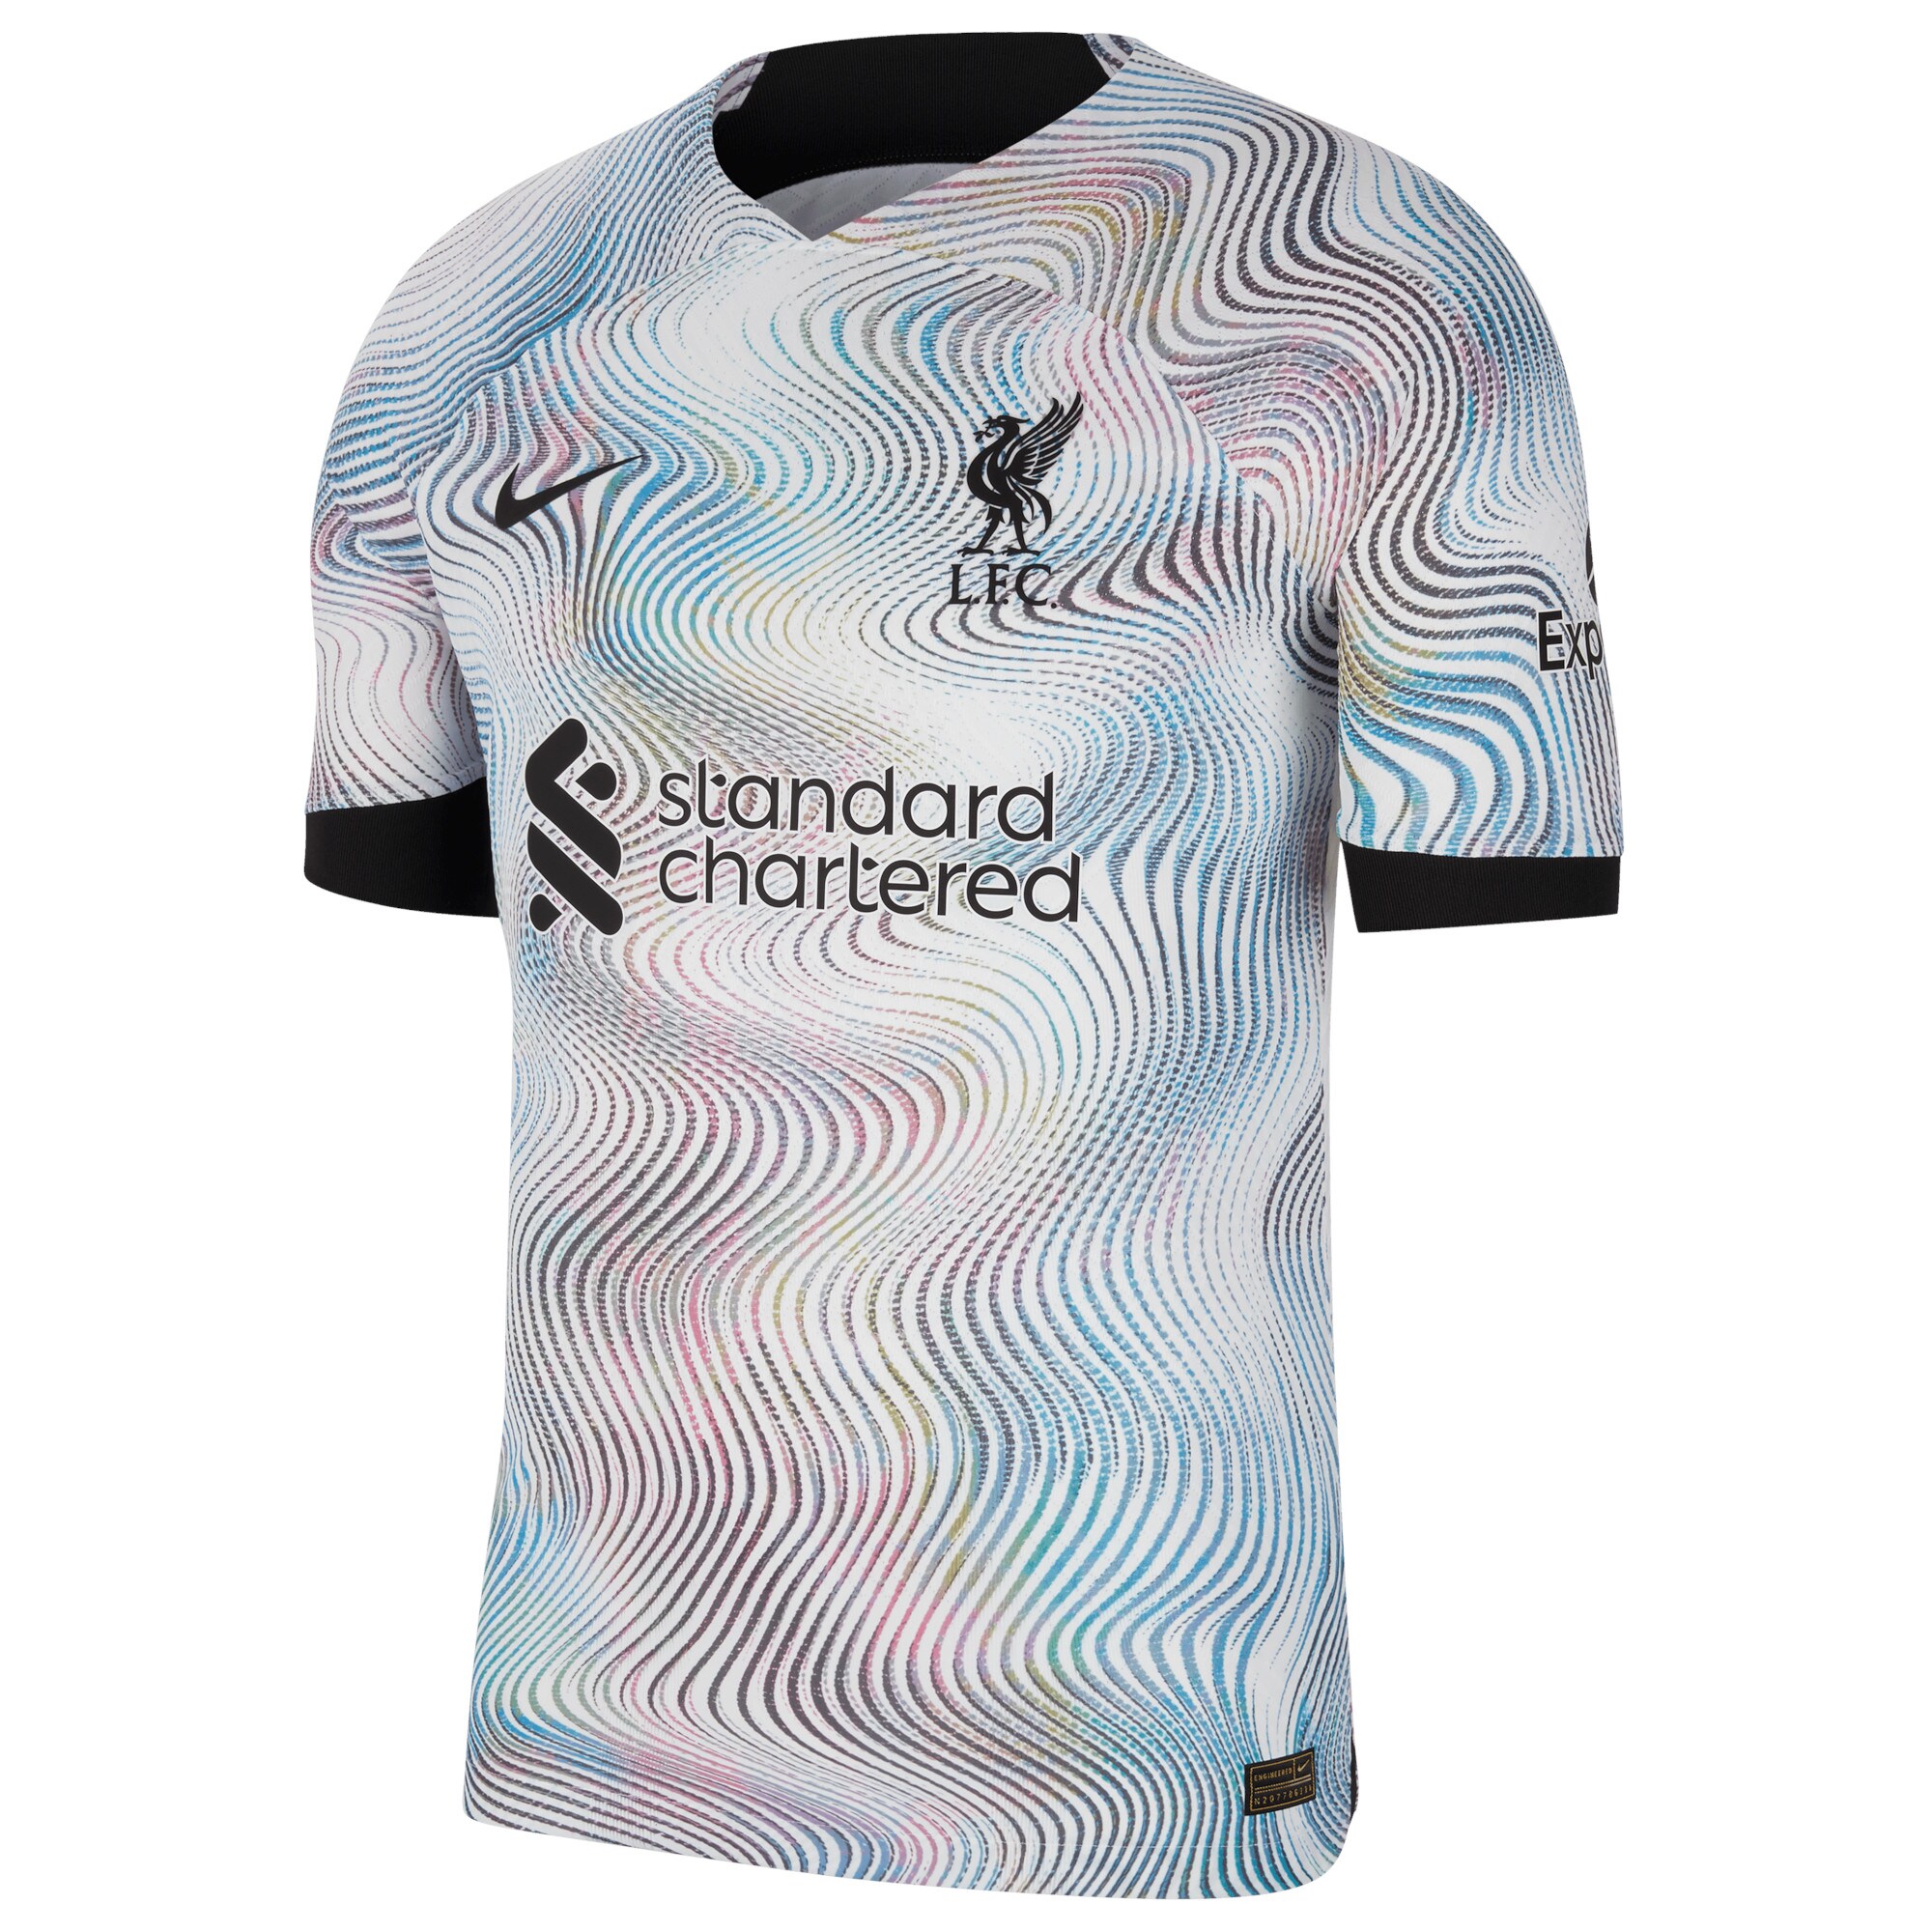 Liverpool Away Vapor Match Shirt 2022-23 with Milner 7 printing